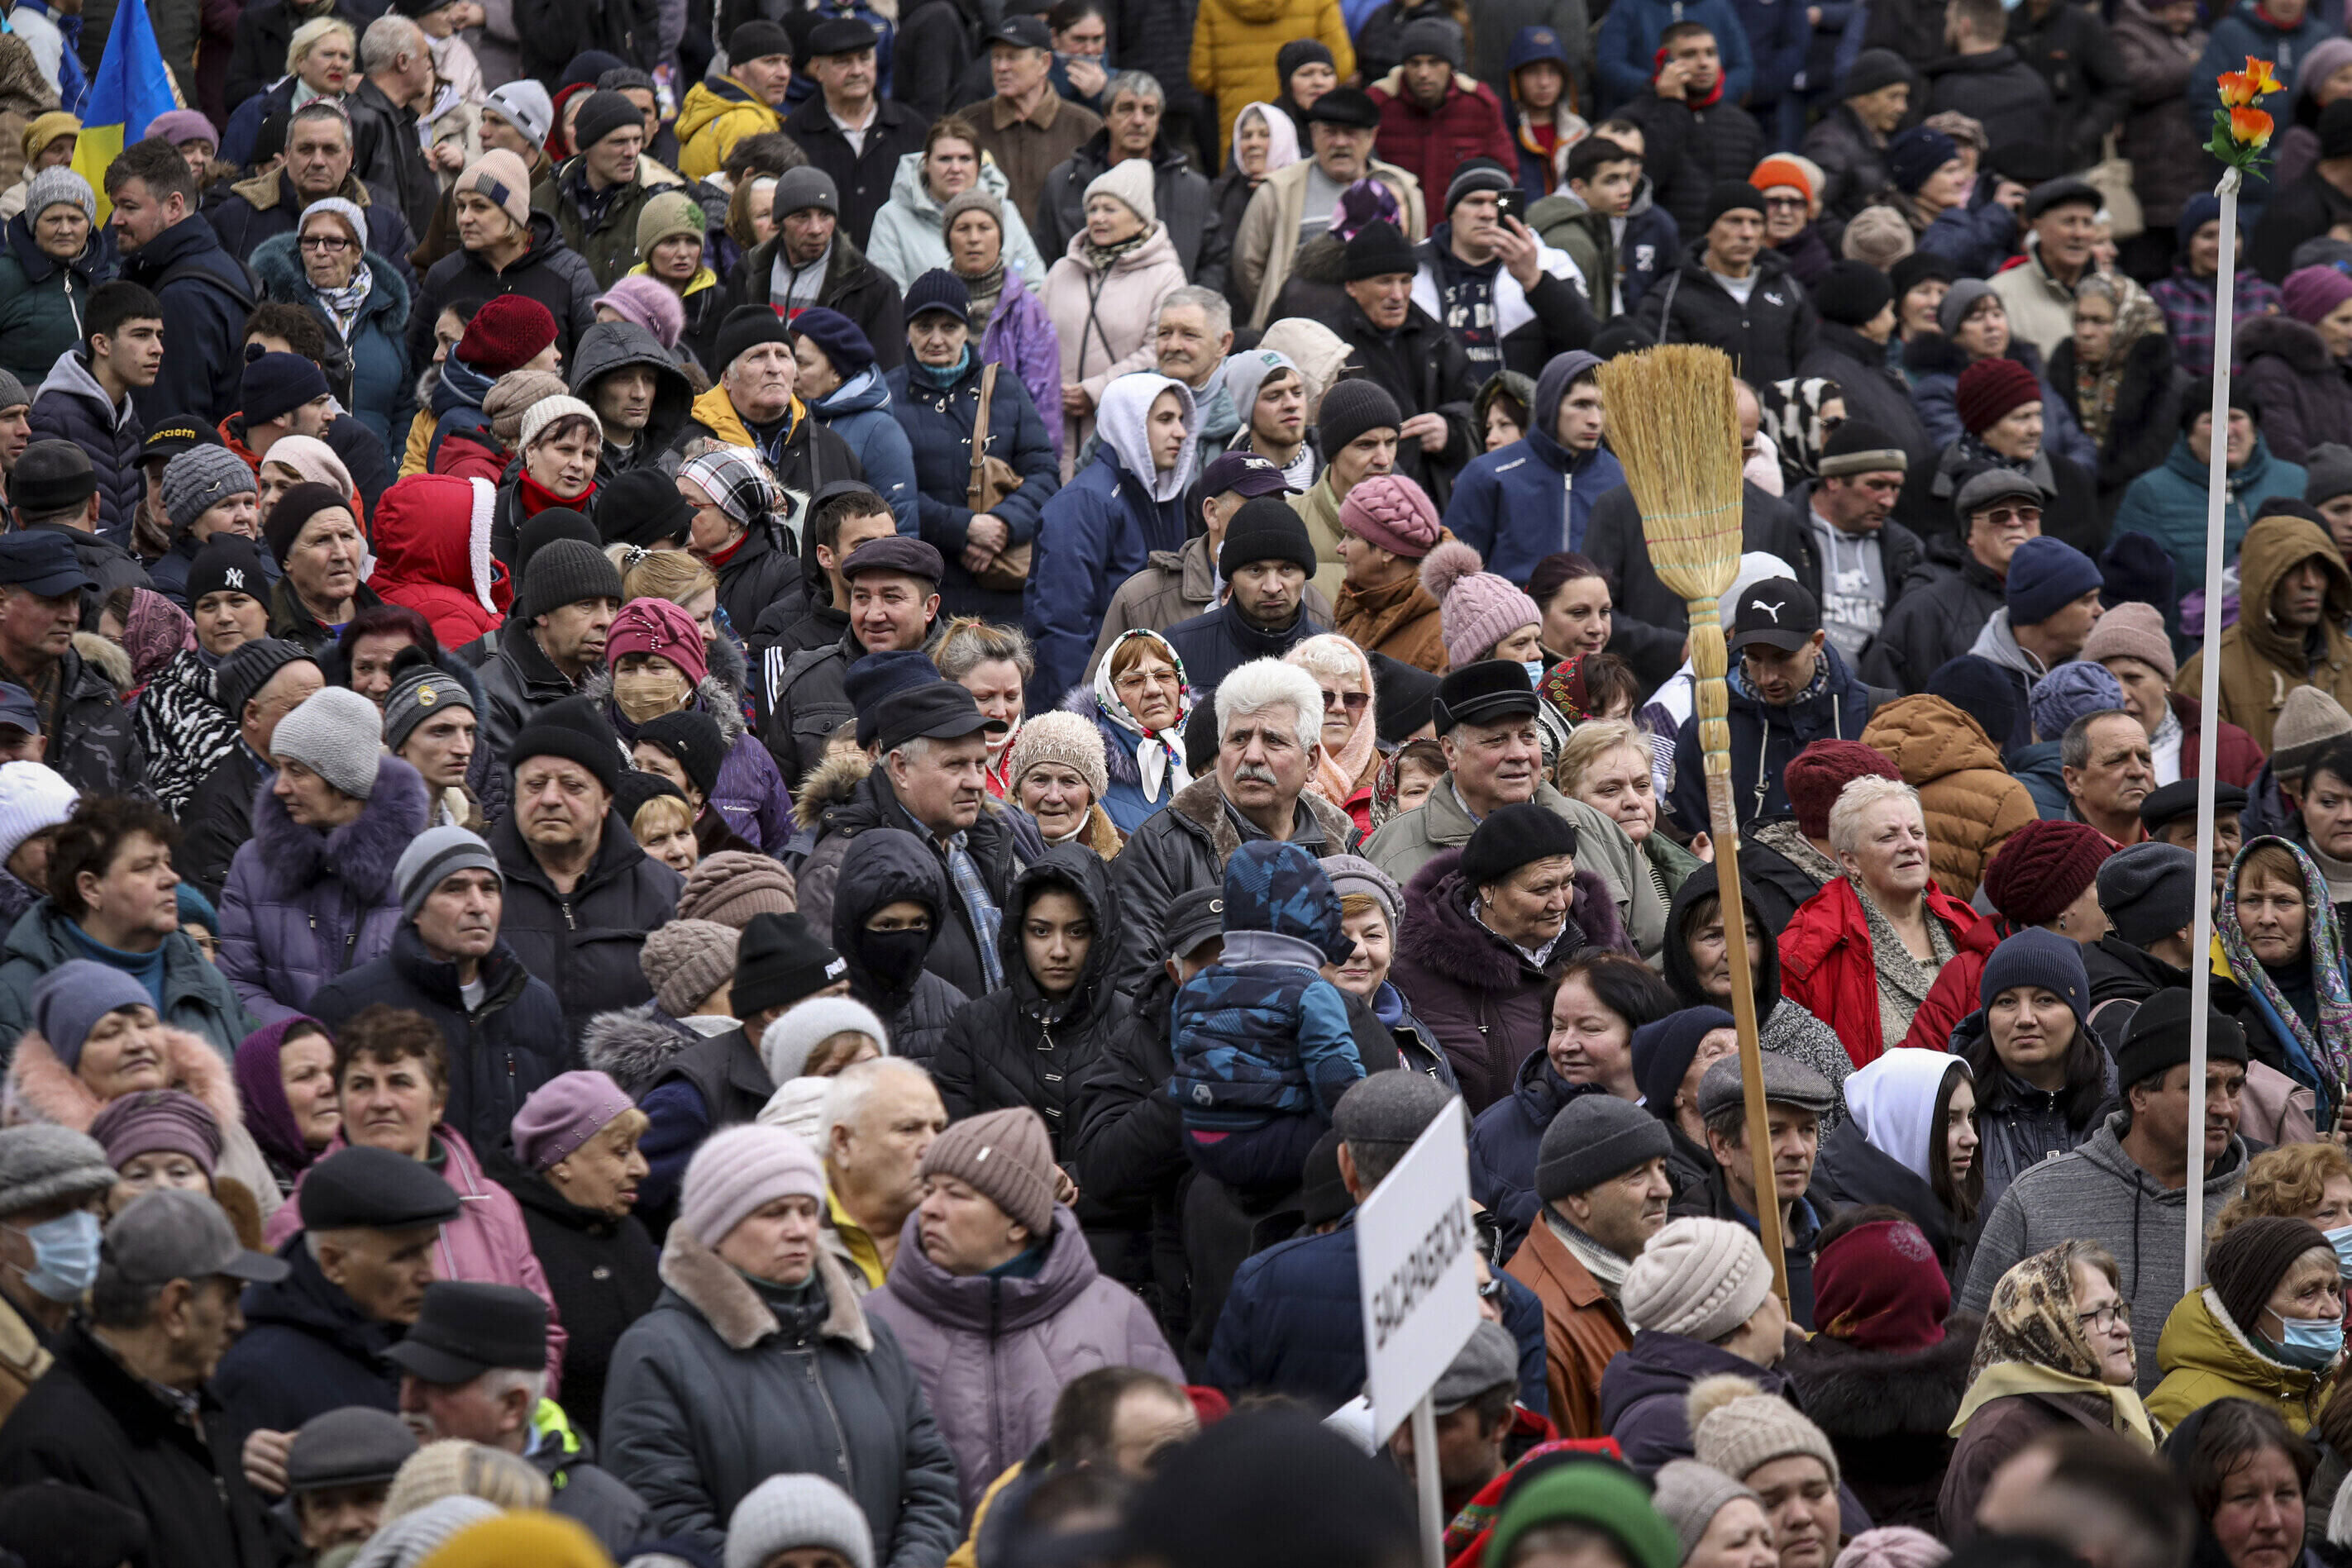 Napeto u Moldaviji: Tisuće na ulicama - jesu li ovo "pro-ruski prosvjedi" ili ih se takvima samo želi prikazati? Predsjednica Sandu tvrdi da je krenula moskovska zavjera i plan za rušenje njene vlasti